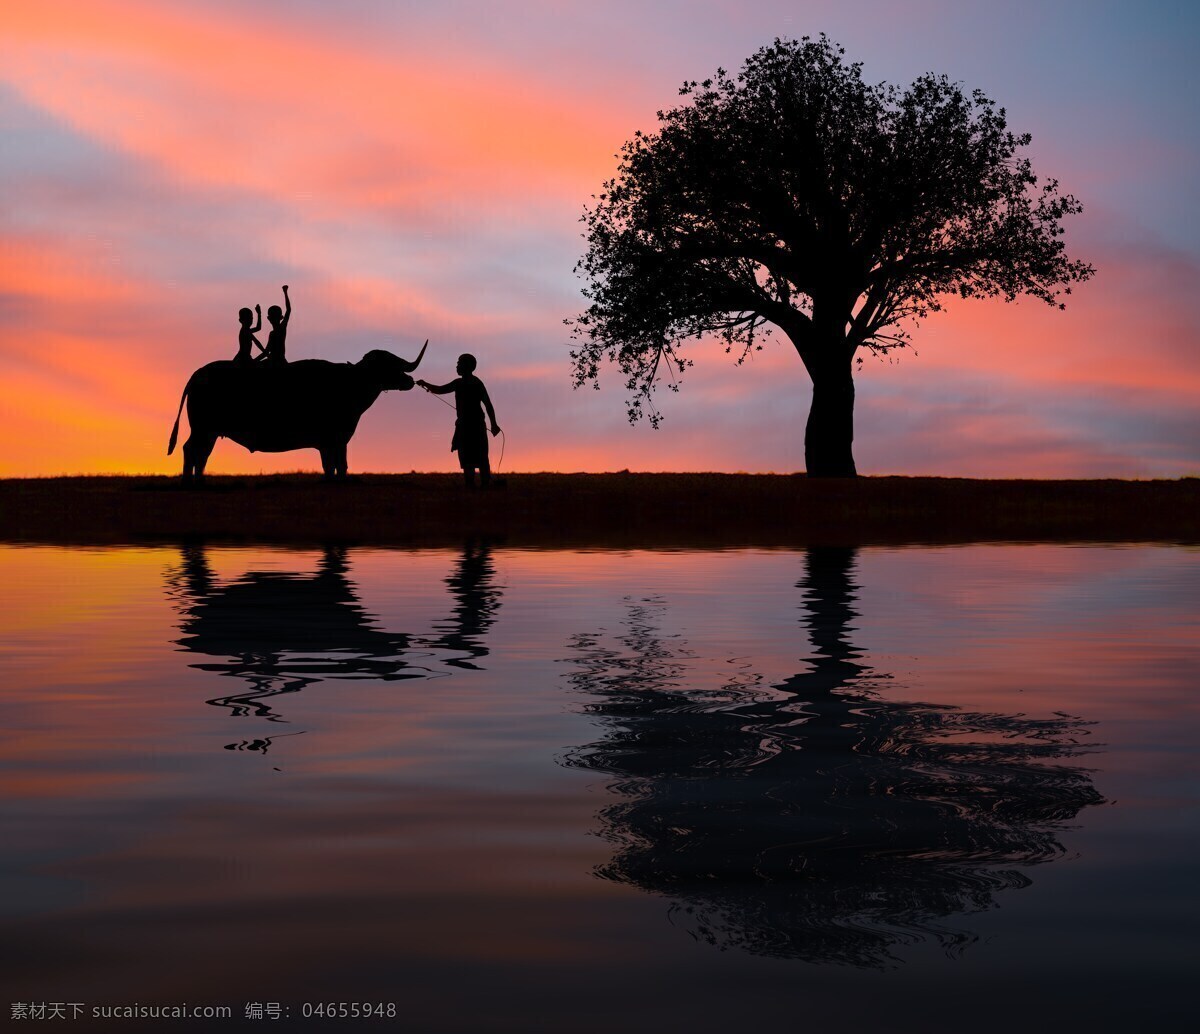 大象与人 泰国 东南亚 意境 大象 象夫 黄昏 夕阳 人与自然 人与象 旅游摄影 国外旅游